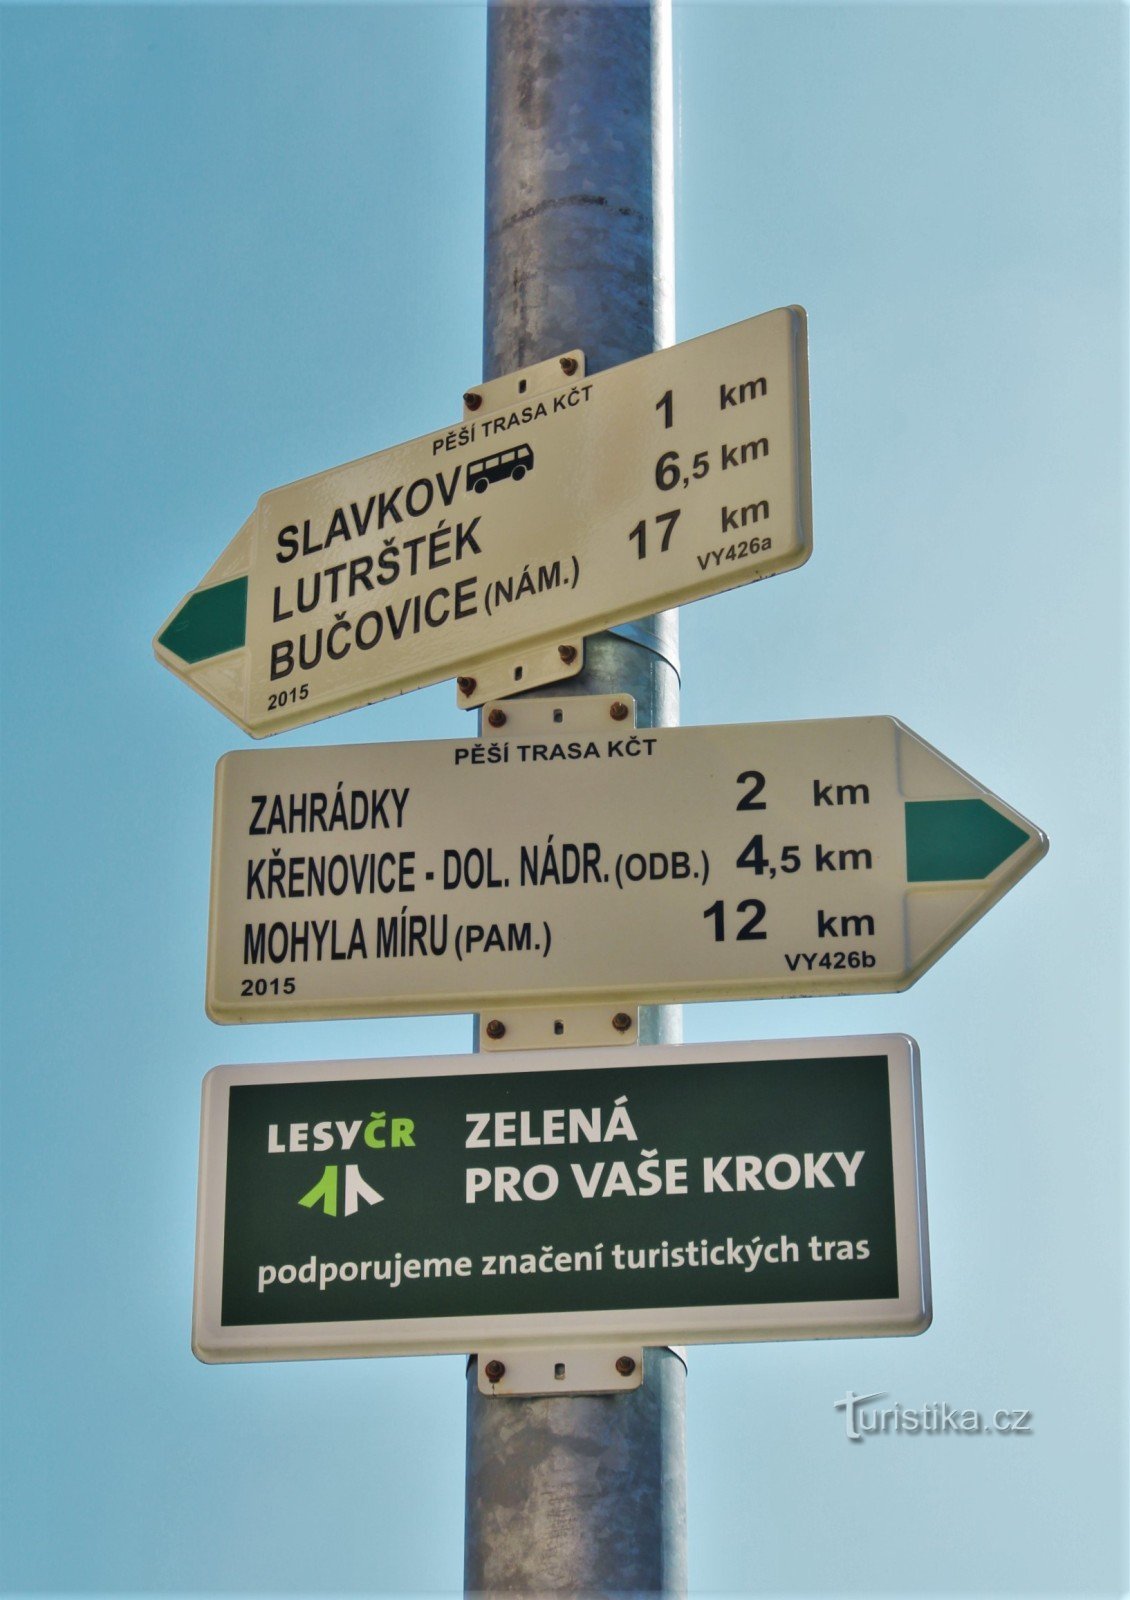 Turistické rozcestí Slavkov u Brna-nádraží